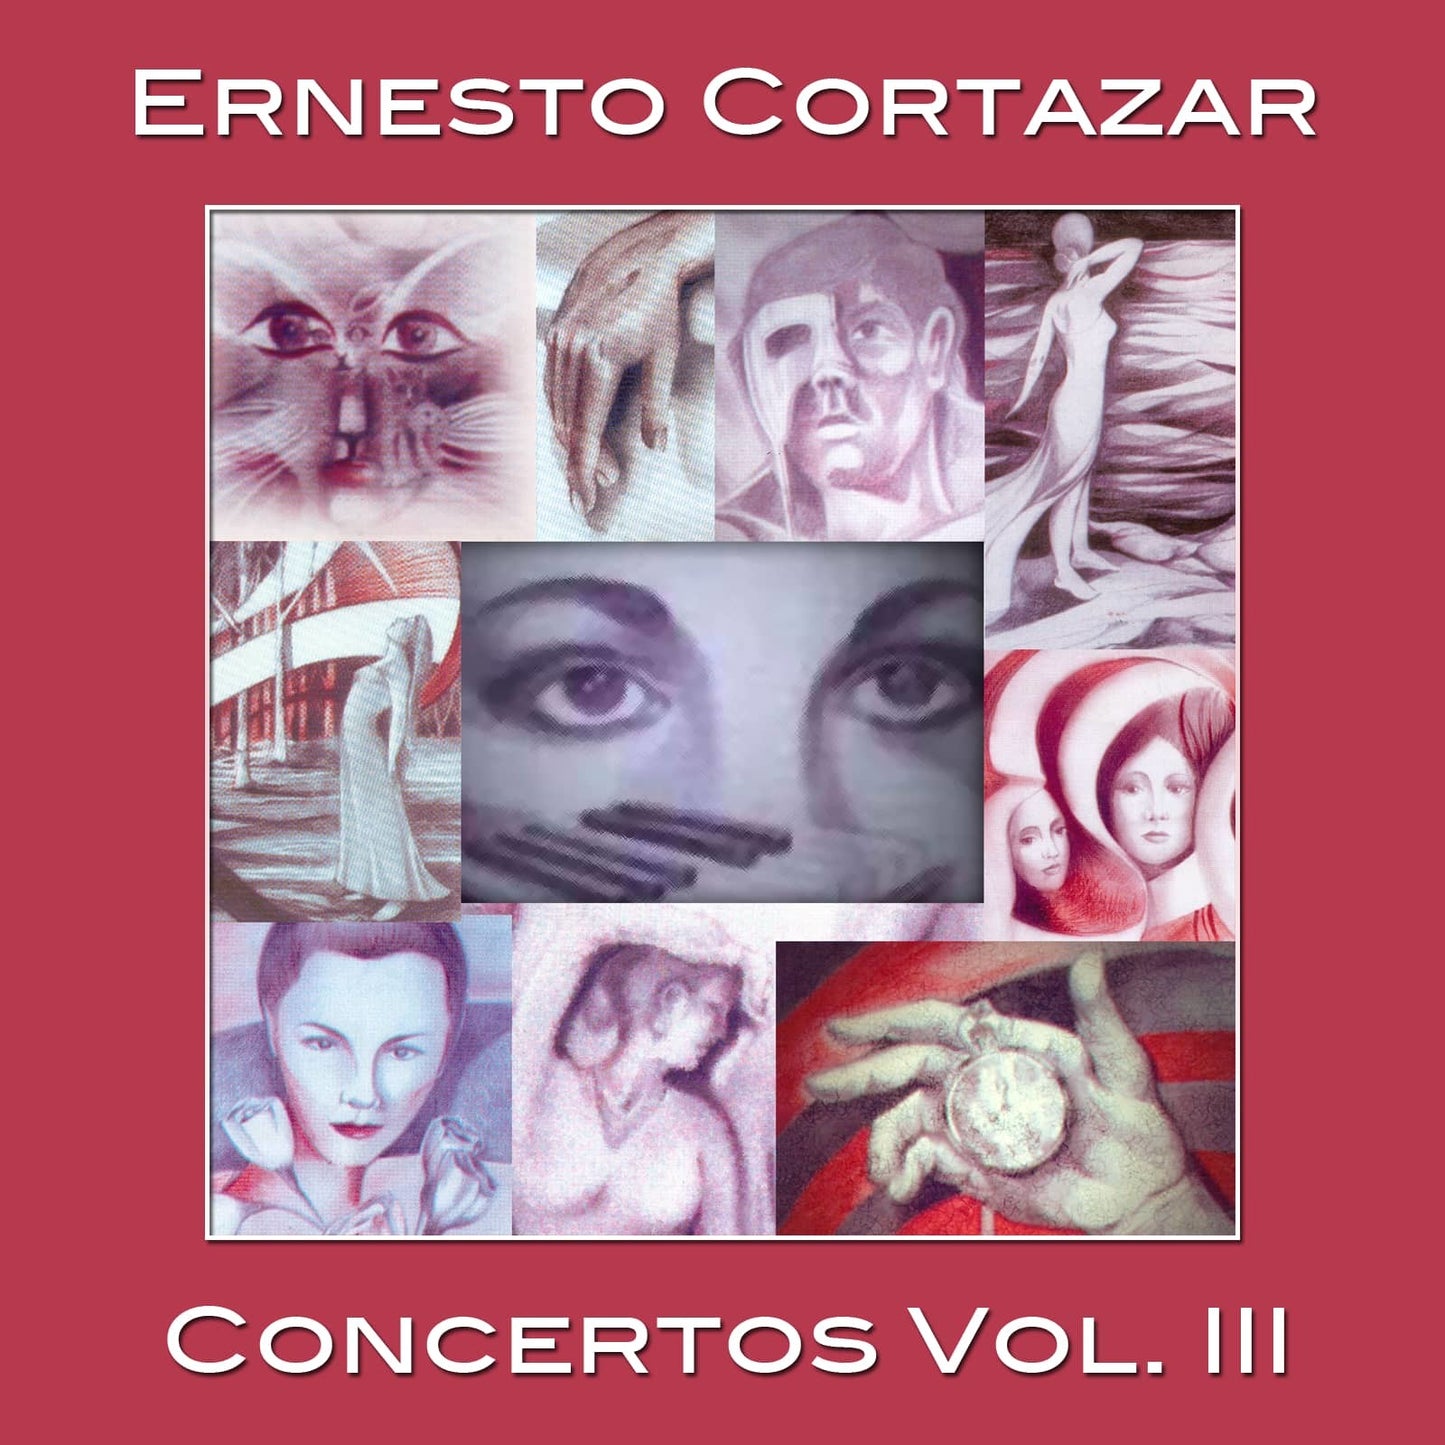 Concertos Vol. III MP3 Album Composed by Ernesto Cortazar